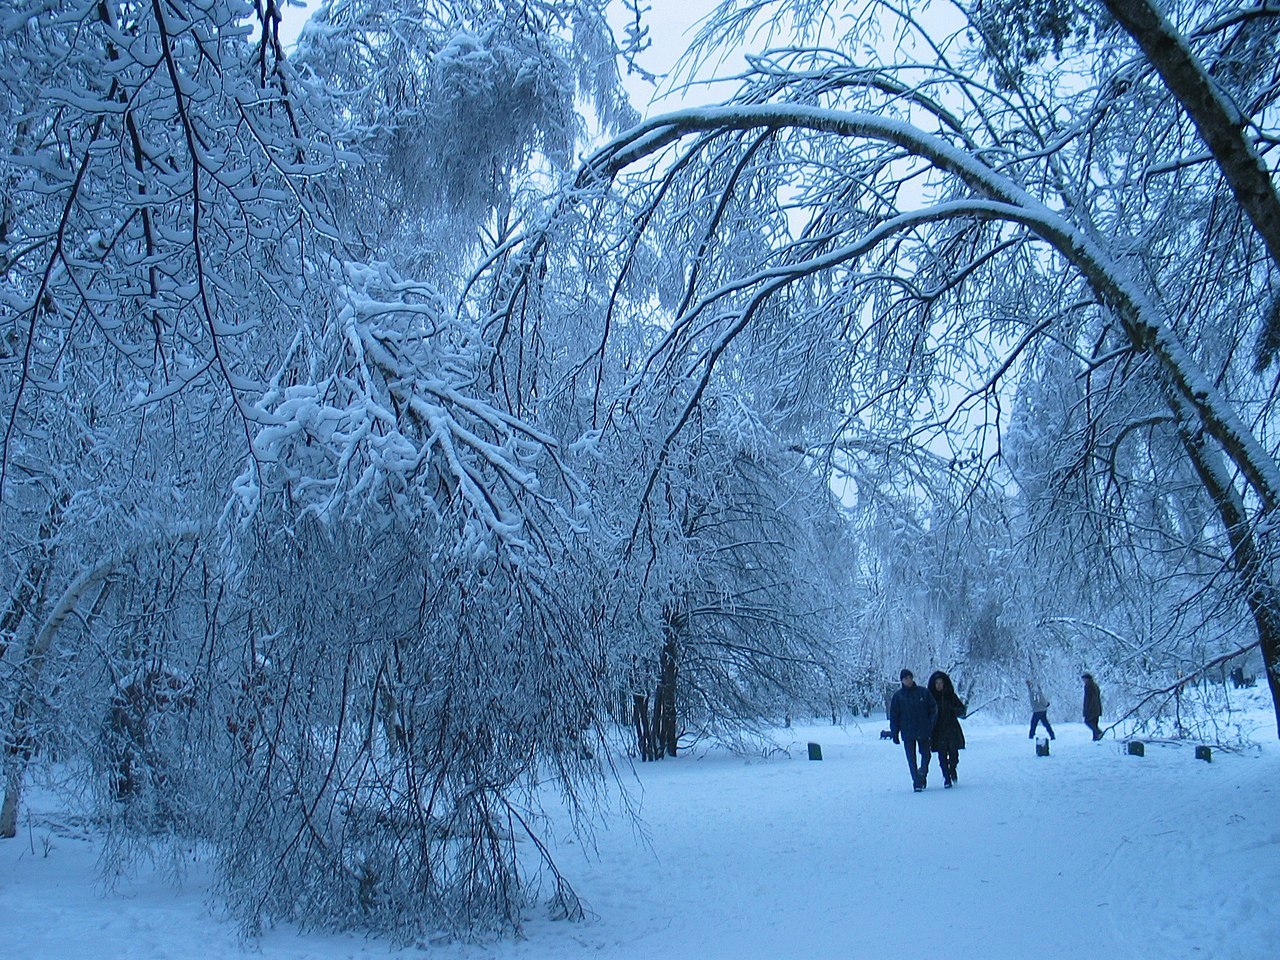 К концу следующей недели в Москве ожидается снежный покров высотой до 6 сантиметров